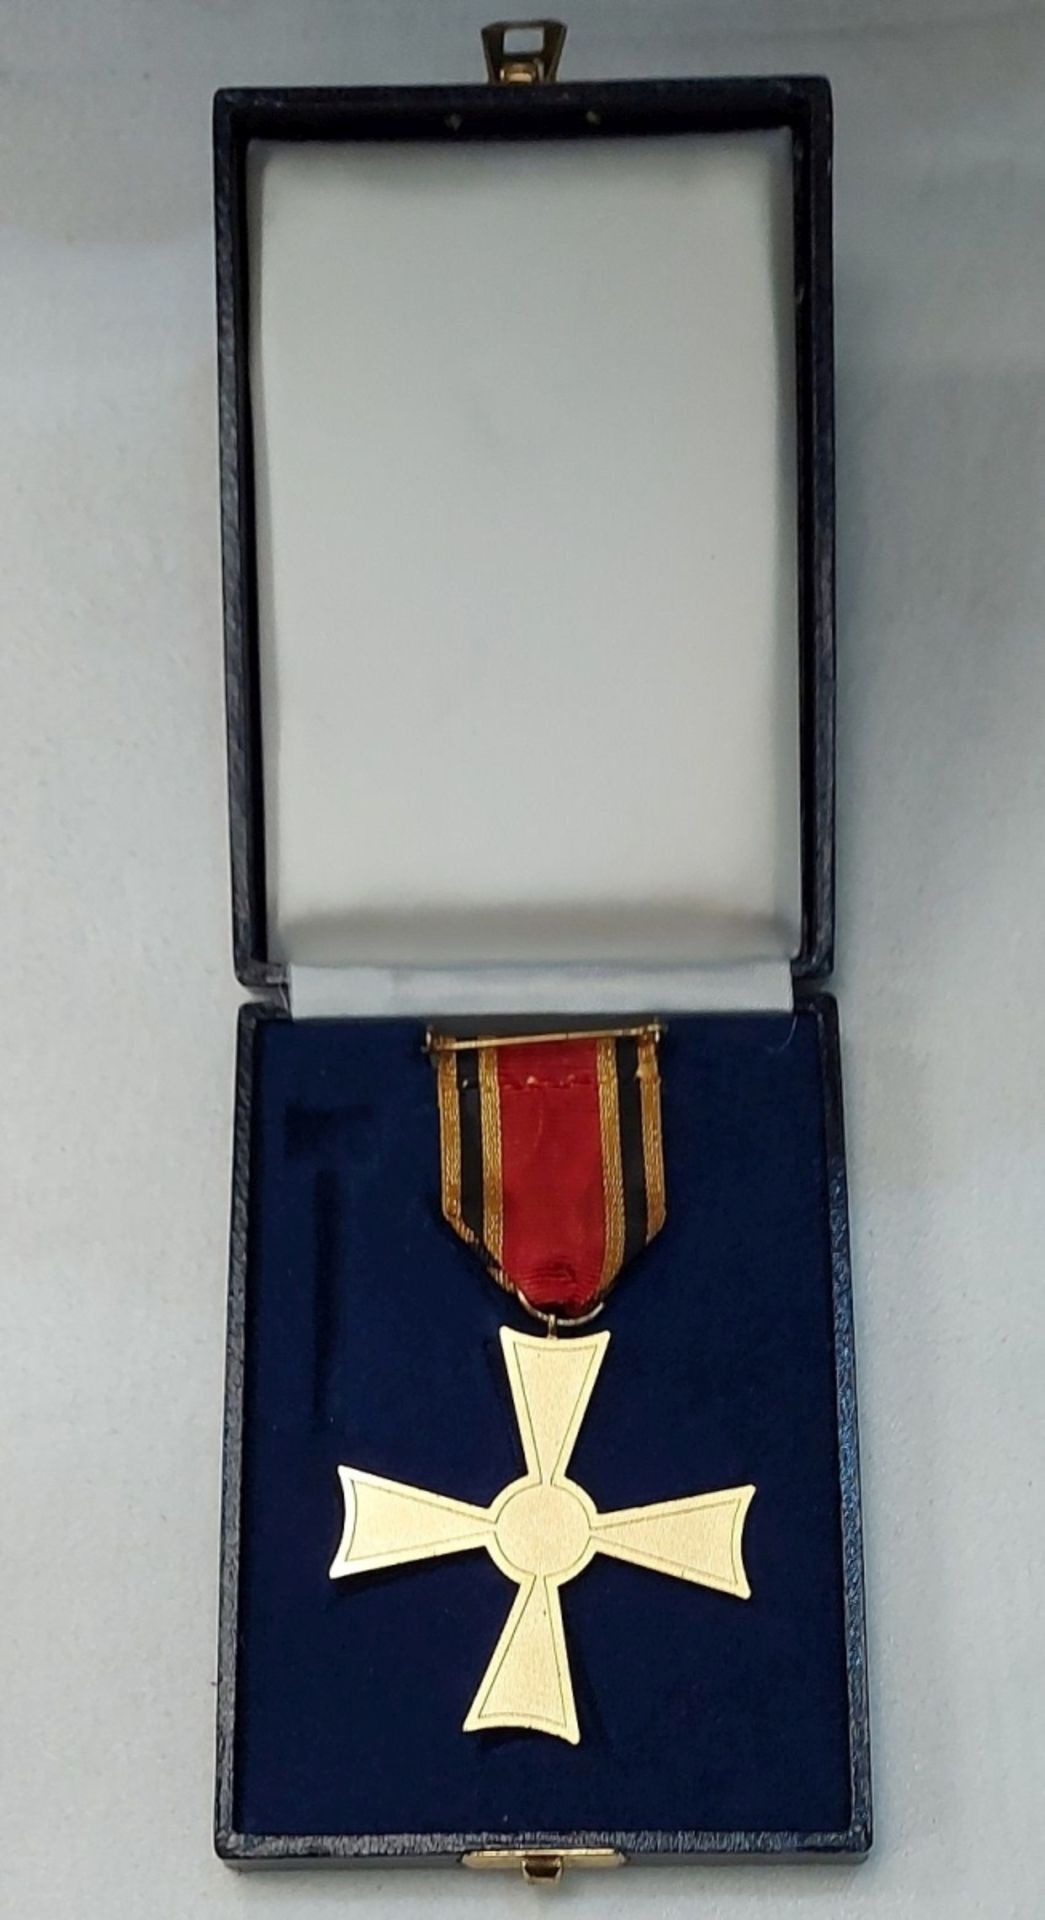 Verdienstorden der Bundesrepublik Deutschland Bundesverdienstkreuz in Original Box - Bild 4 aus 4